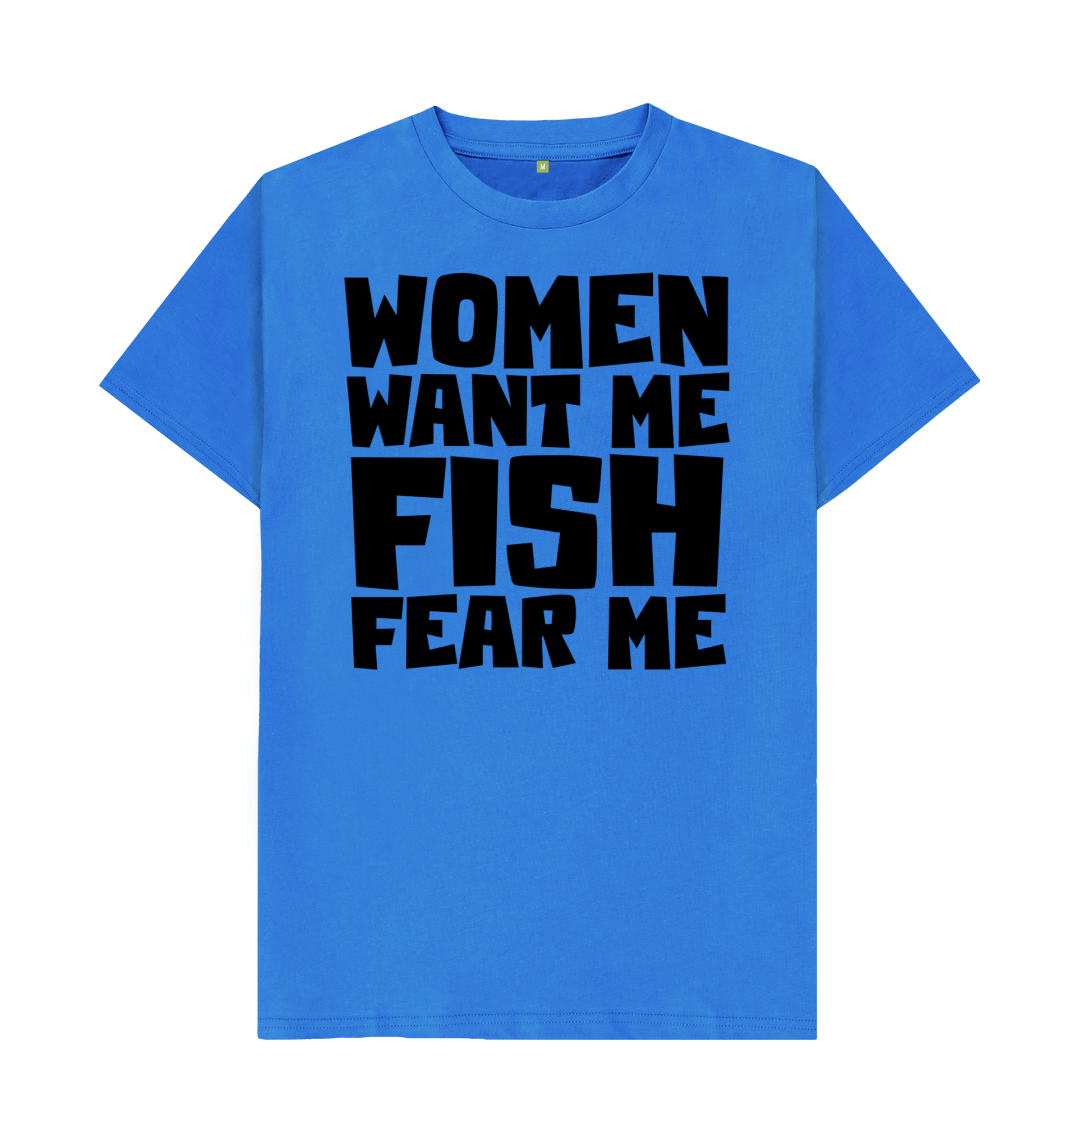 Women Want me, Fish Fear Me, Fishing Shirt, Fathers Day Gift